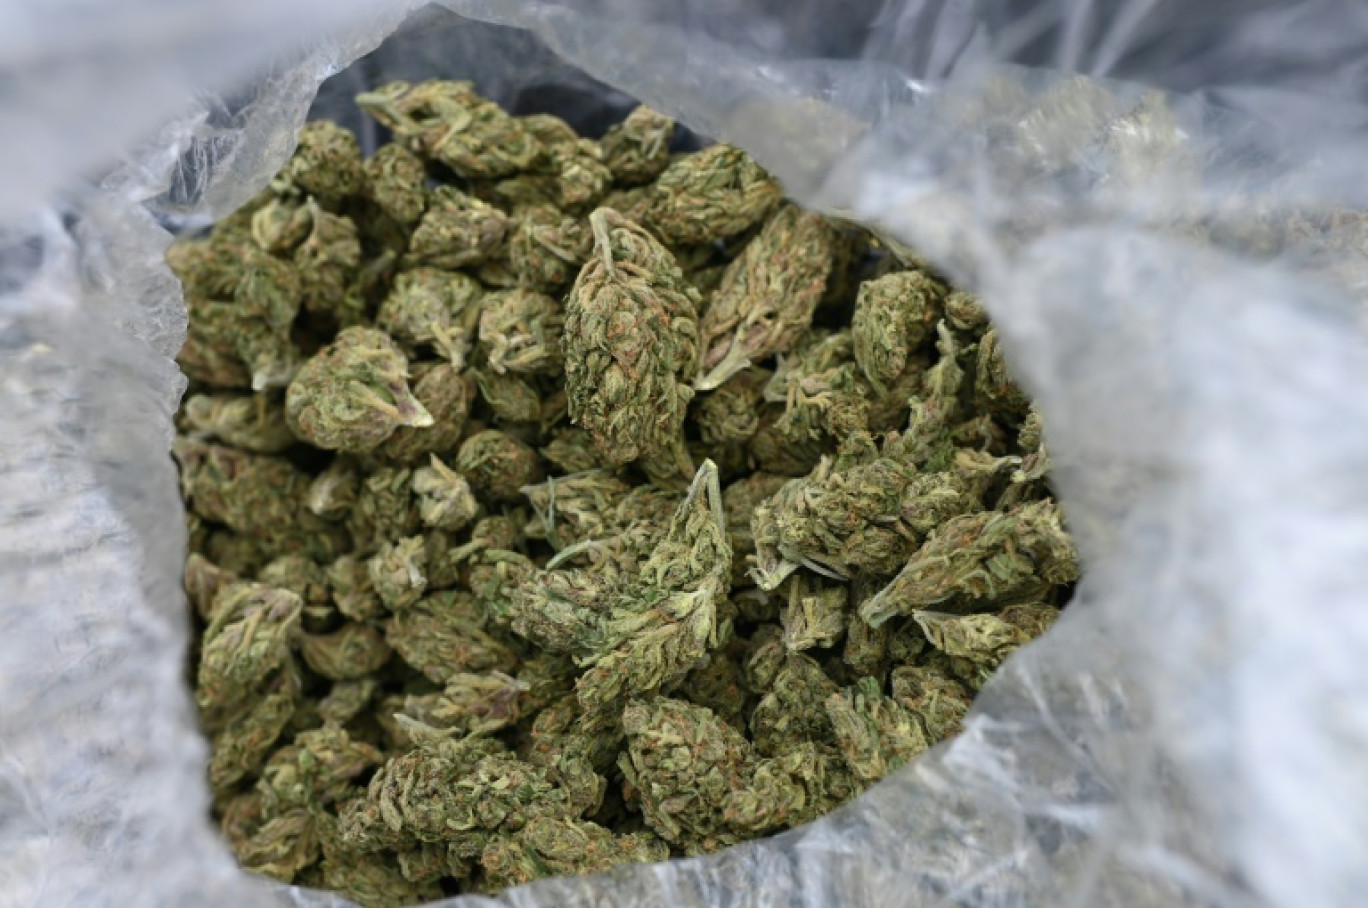 Au moins 70 kg de cannabis découverts chez la maire d'Avallon dans l'Yonne  | La Gazette France